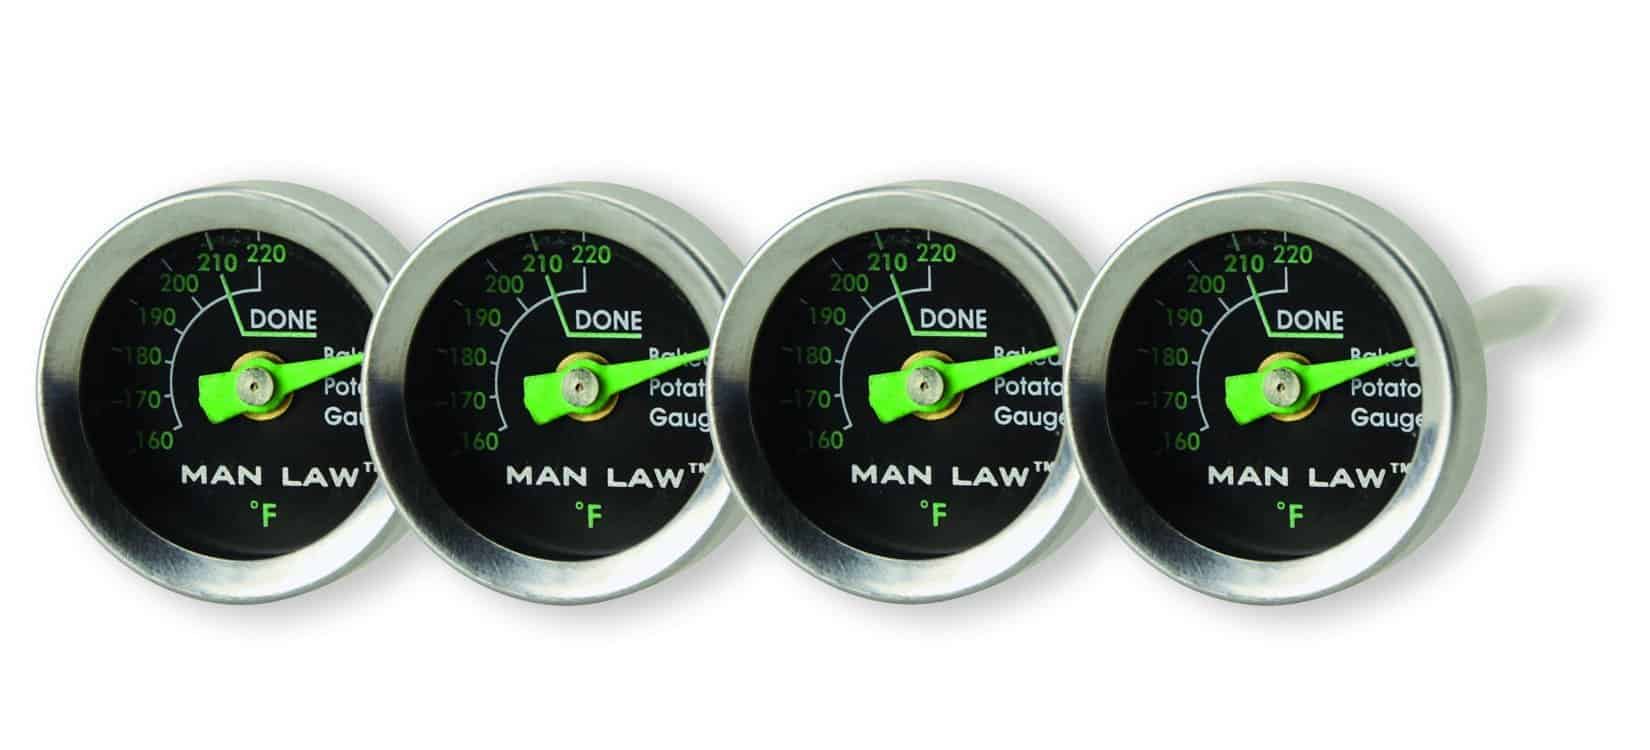 Man Law Glow in the Dark Potato Thermometers, BBQ Accessories, Man Law Premium BBQ Tools